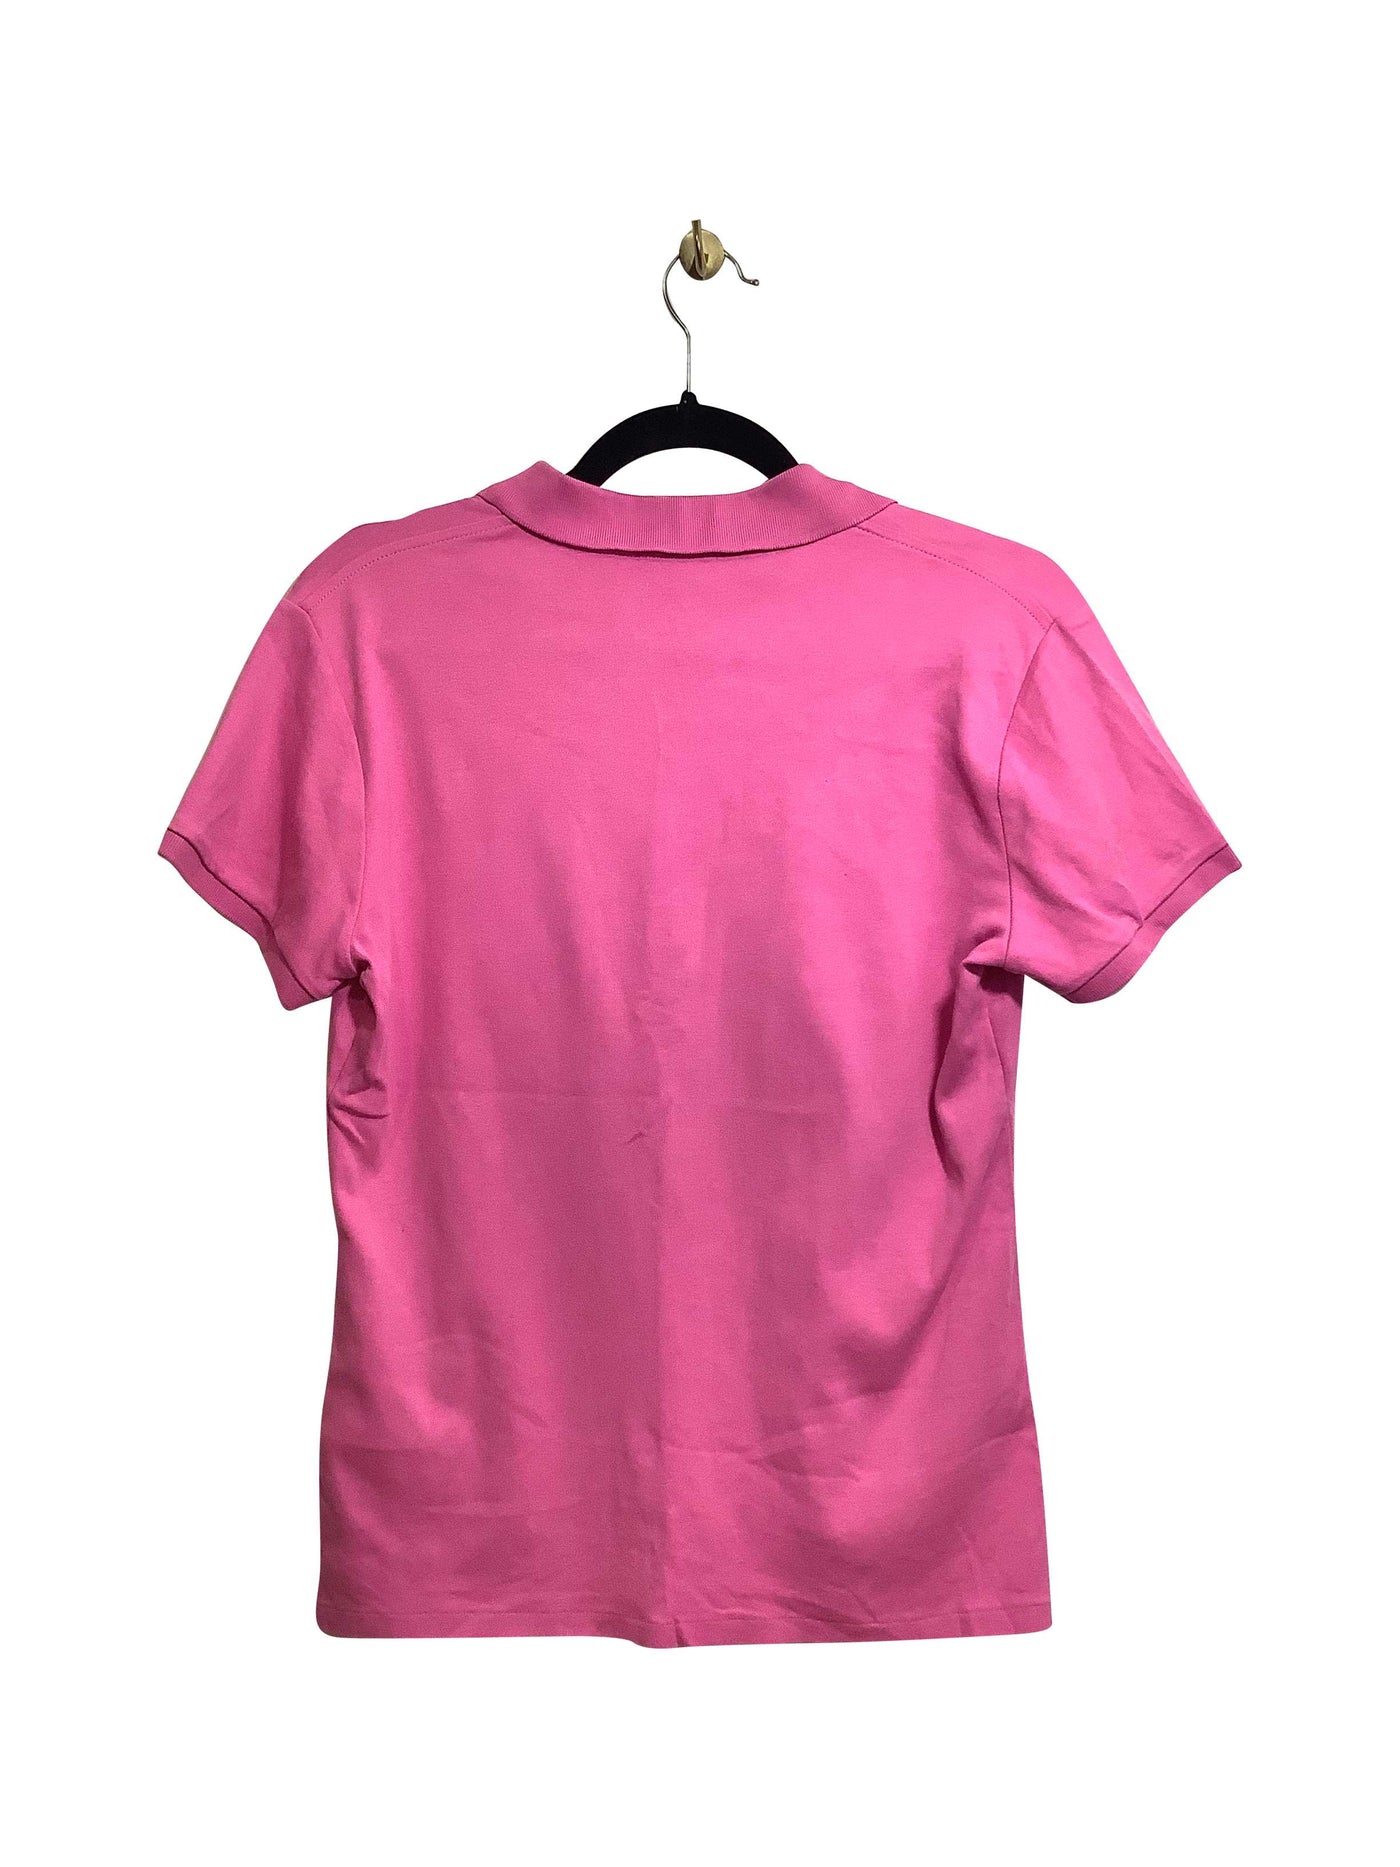 RALPH LAUREN Regular fit T-shirt in Pink - L   Koop